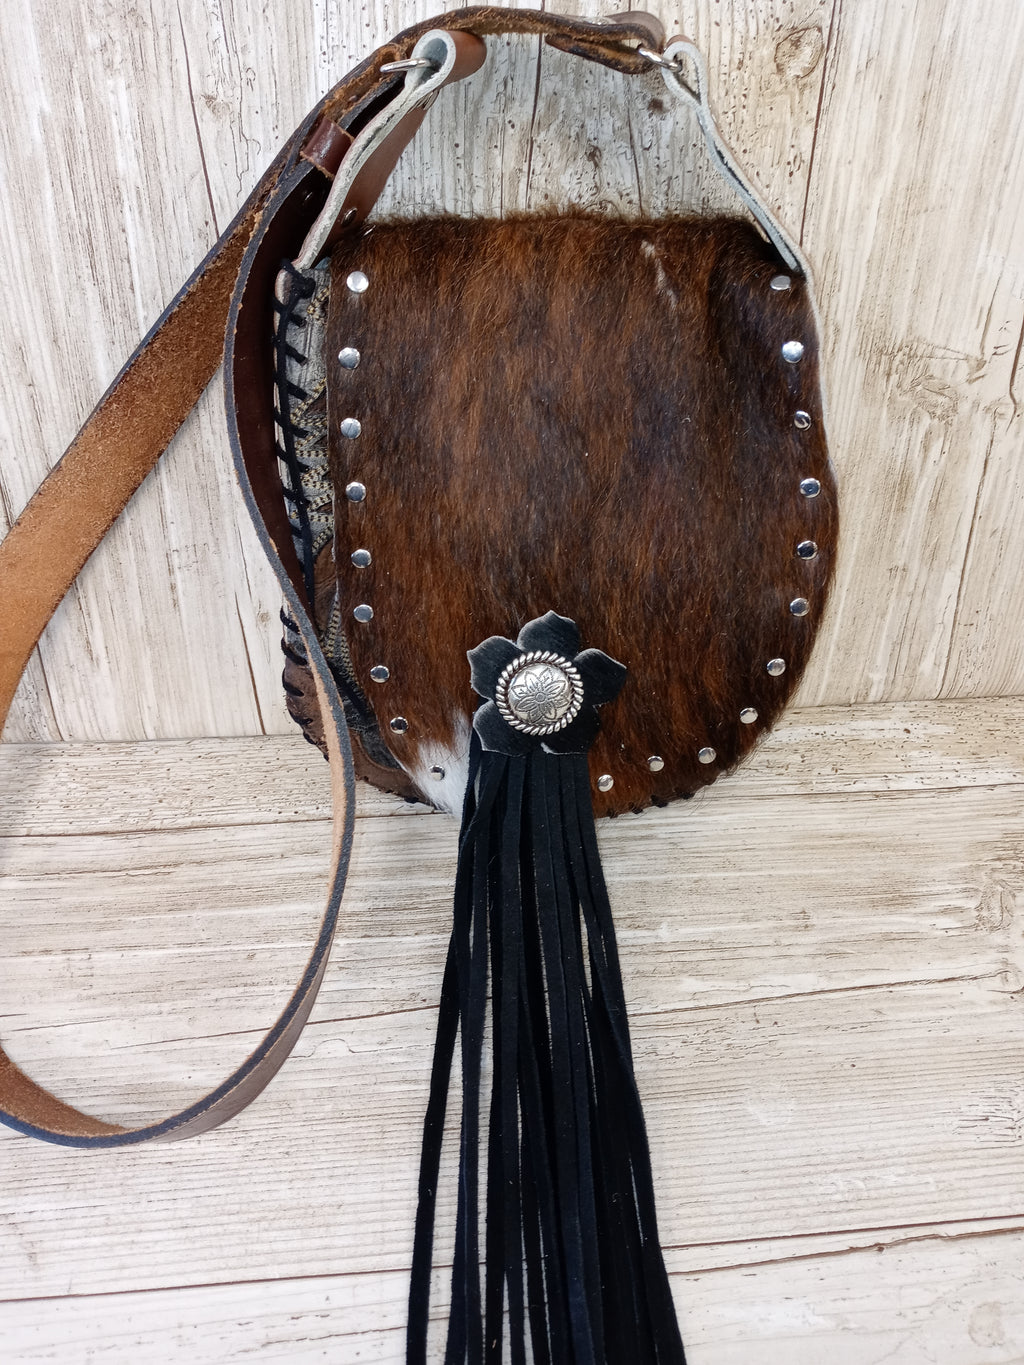 Hair on Hide Bag - Cowboy Boot Purse - Cowhide Purse - Handpainted Purse SB17 Chris Thompson Bags